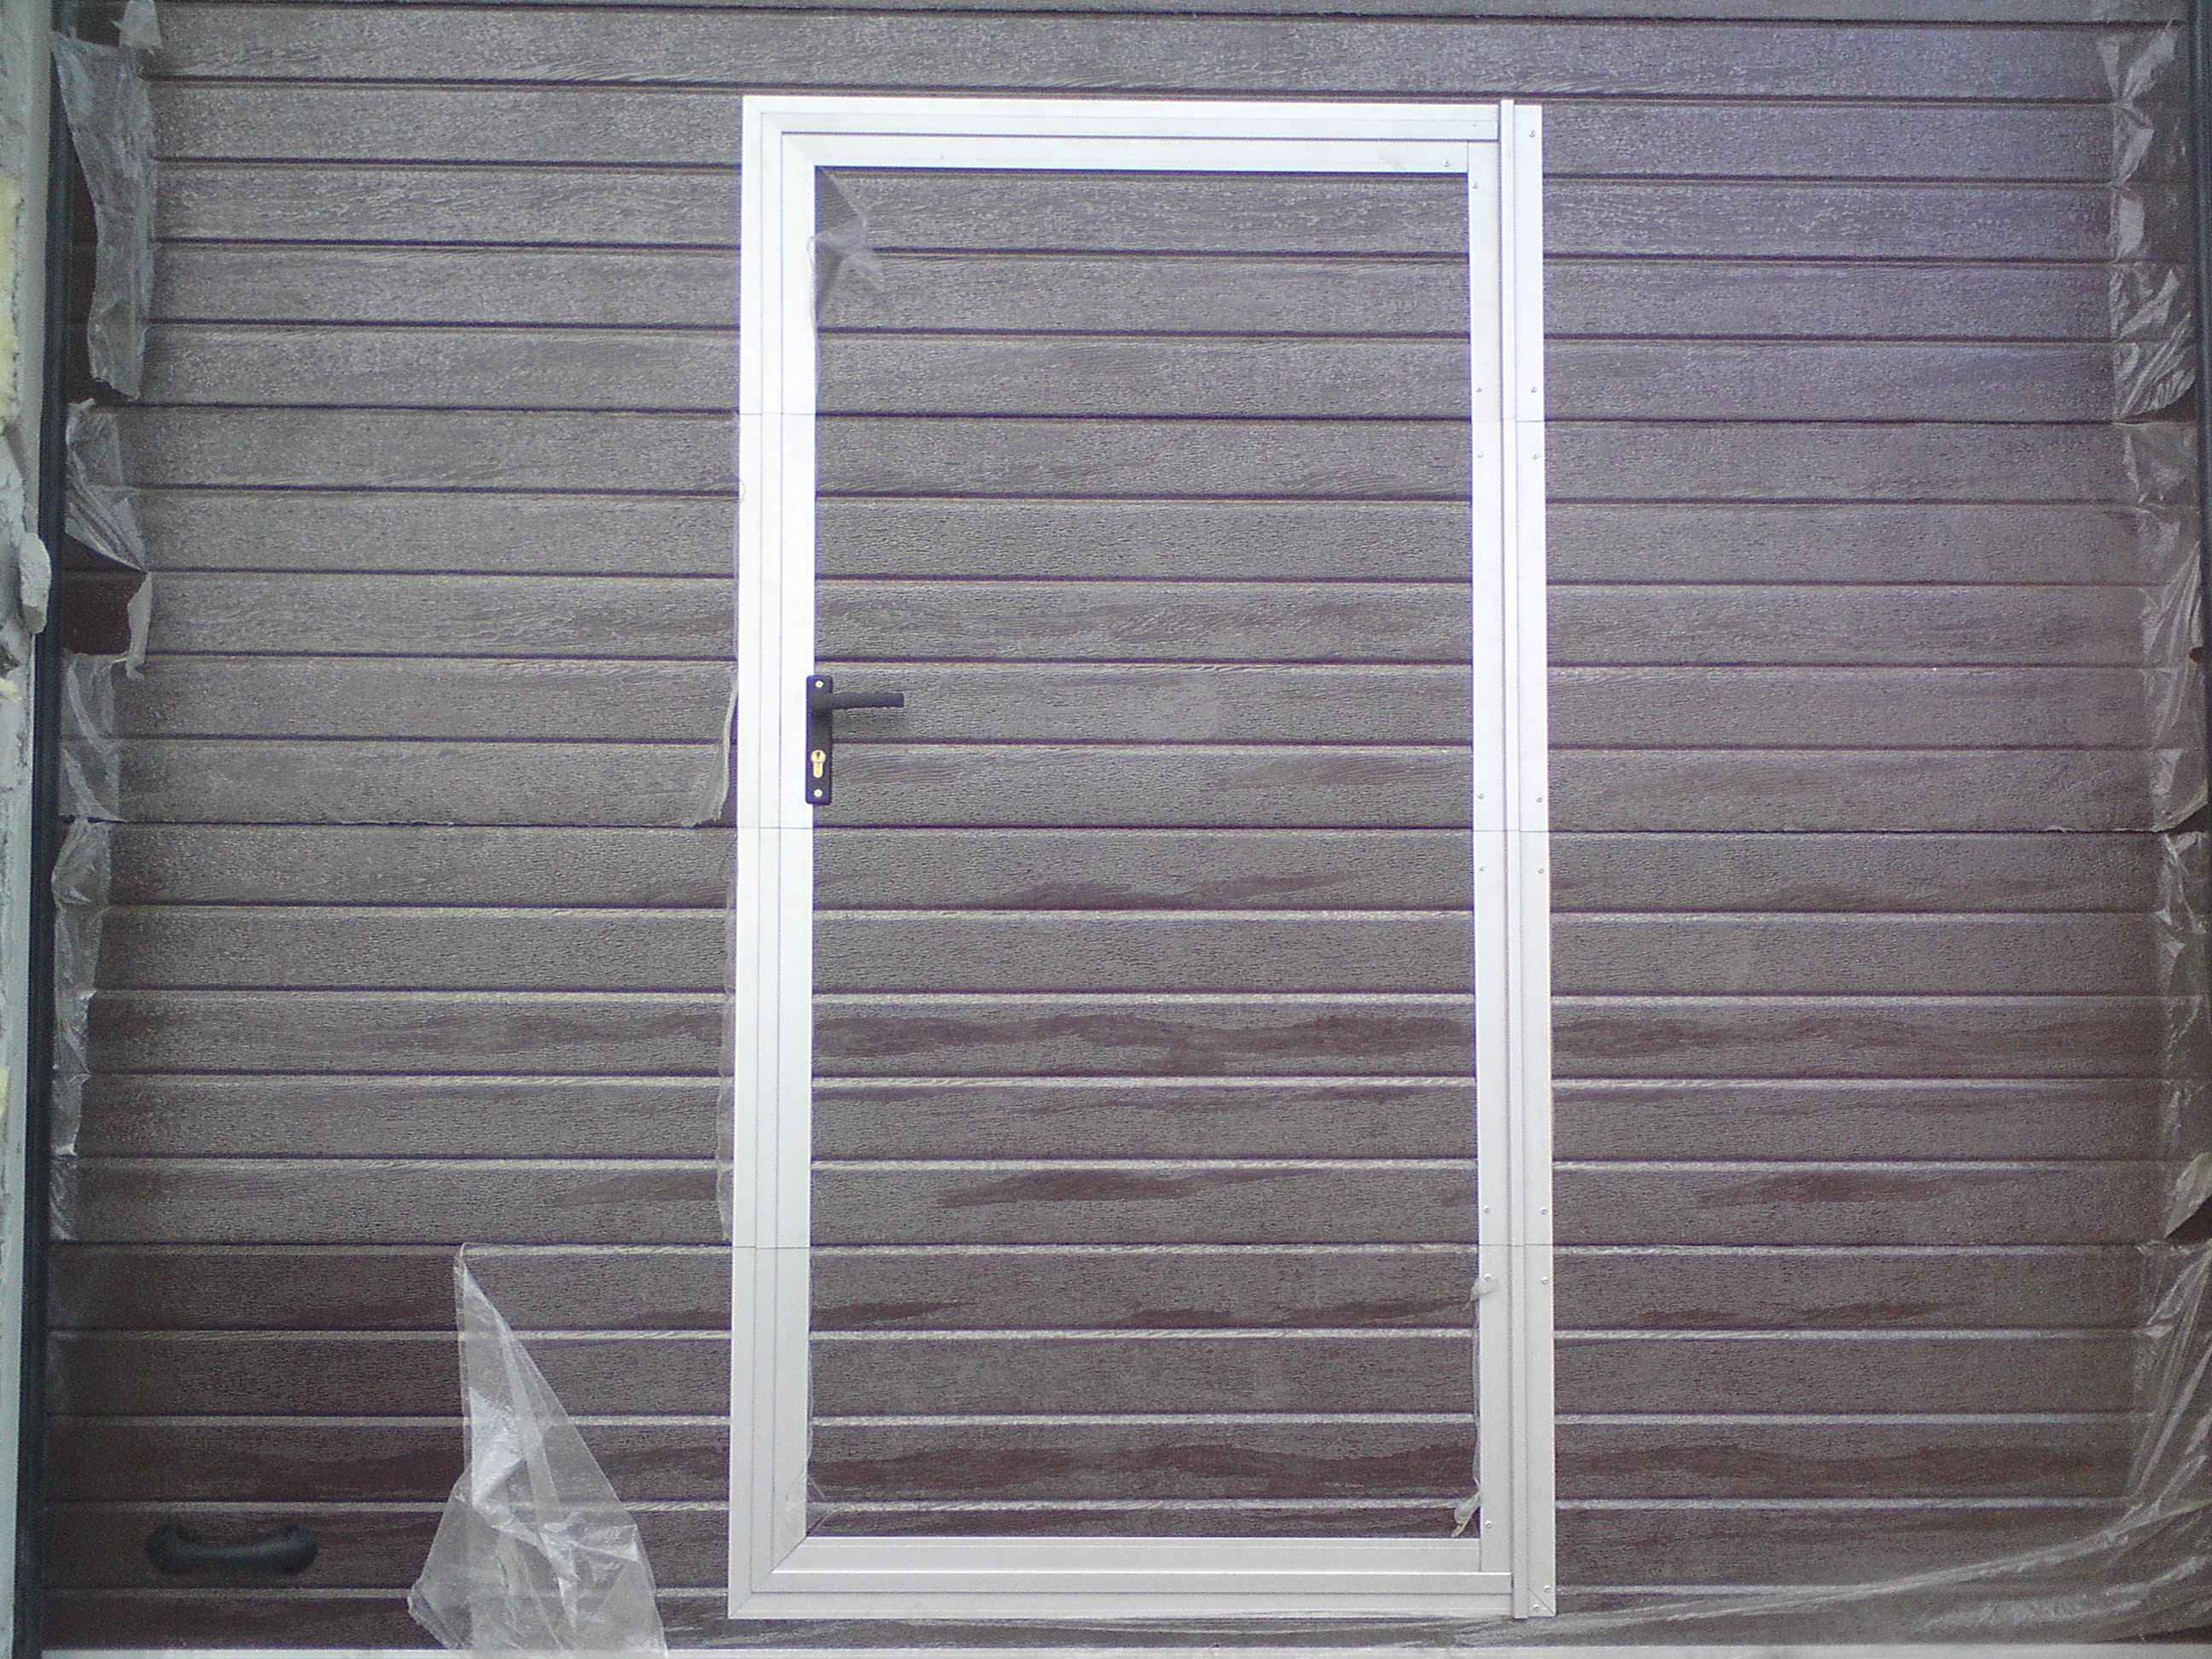 Brama segmentowa z panela z pianą poliuretanową 7